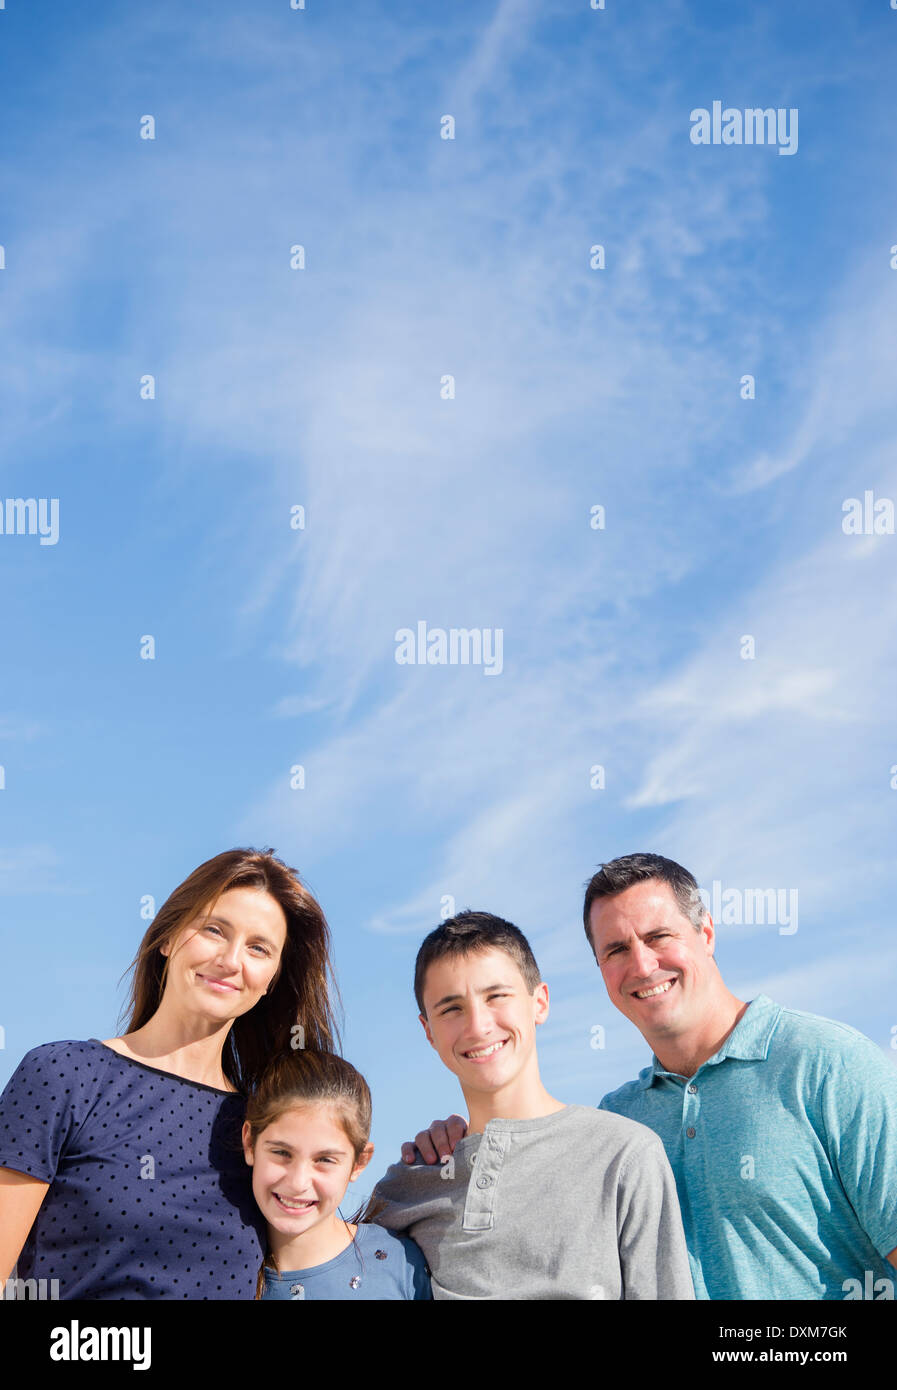 Porträt des Lächelns kaukasische Familie unter blauem Himmel Stockfoto